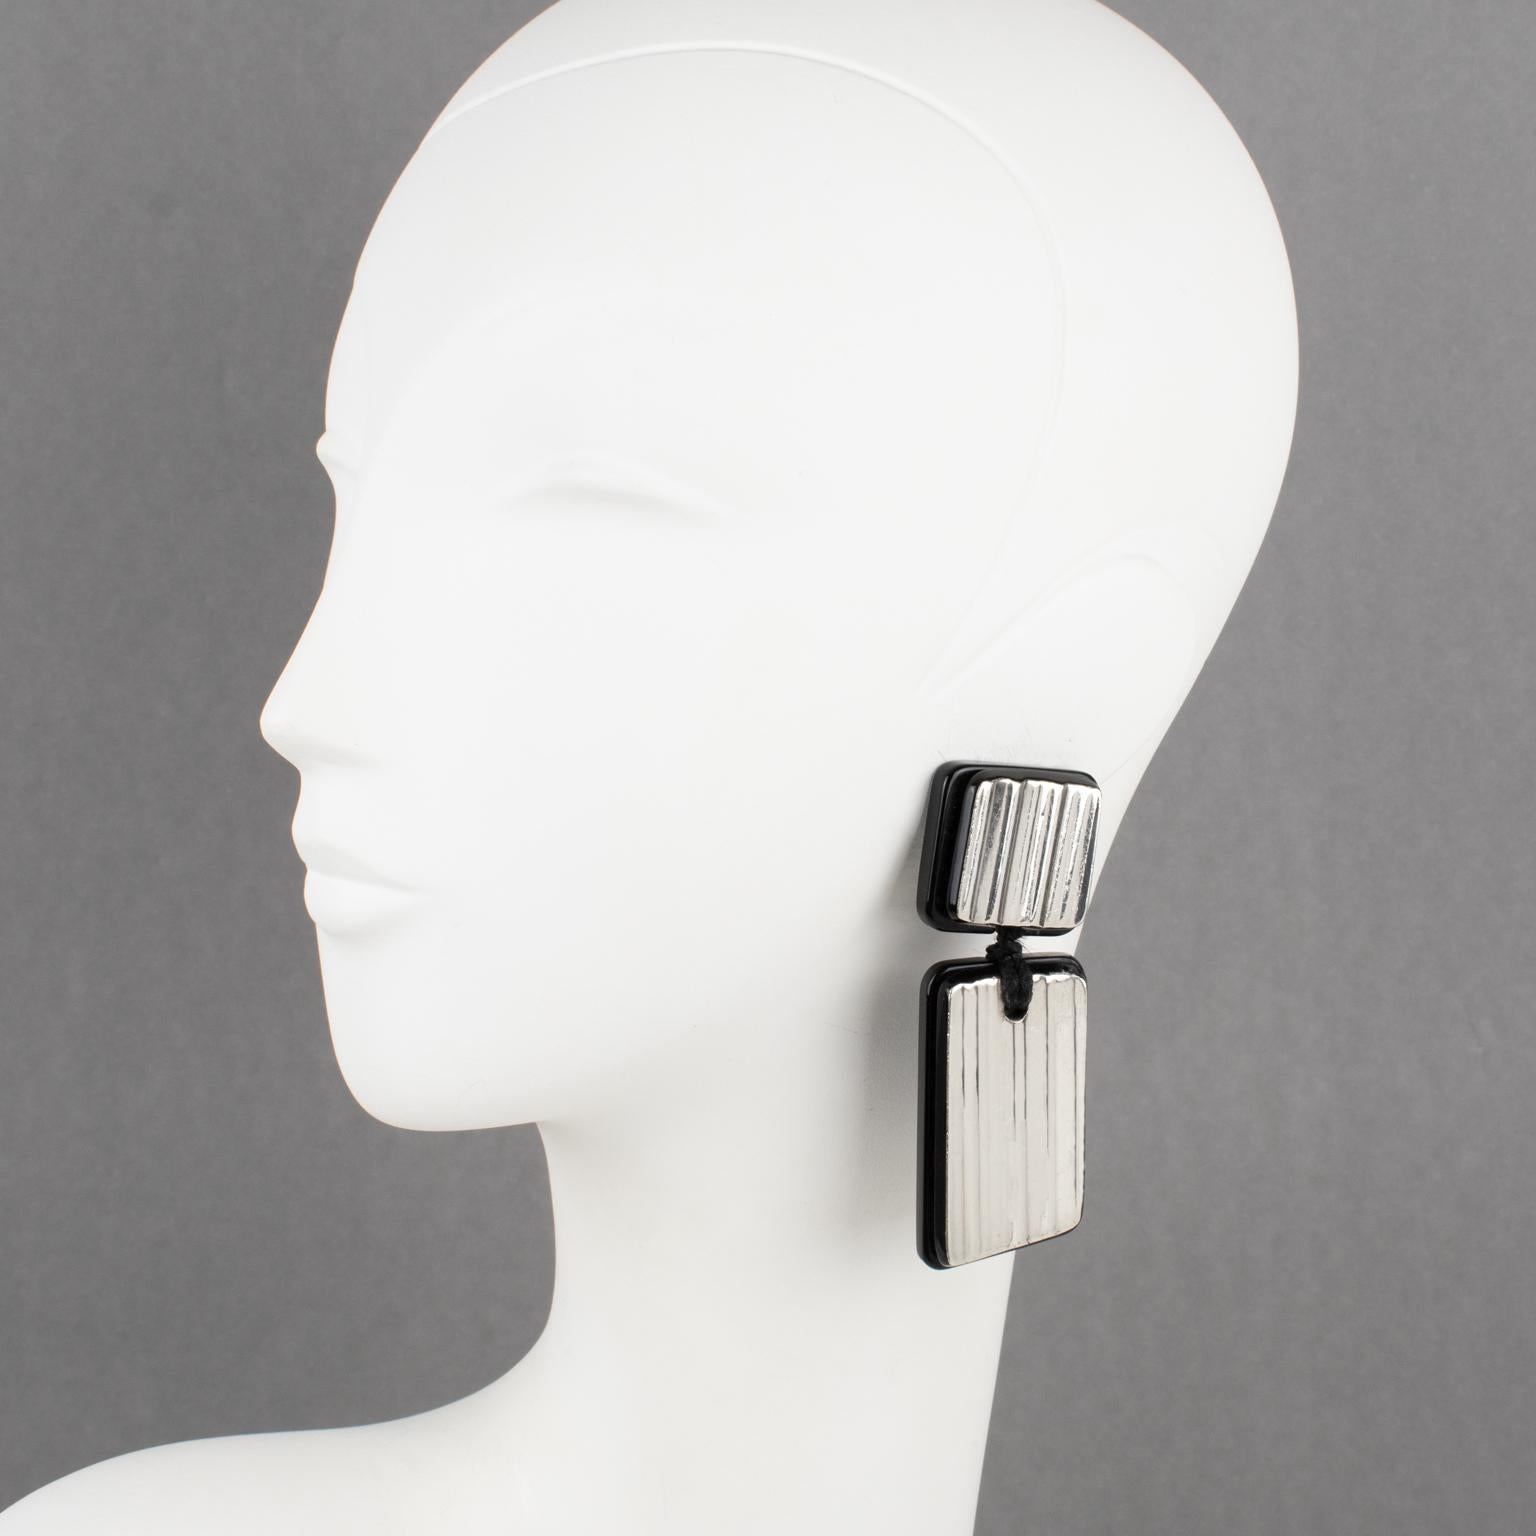 Anne und Frank Vigneri entwarfen diese spektakulären Ohrringe aus Lucite in den 1980er Jahren. Das geometrische Design besteht aus einer schwarzen Lucite-Basis, die mit geschnitzten und gestreiften Sterlingsilber-Elementen versehen ist. Die Ohrringe